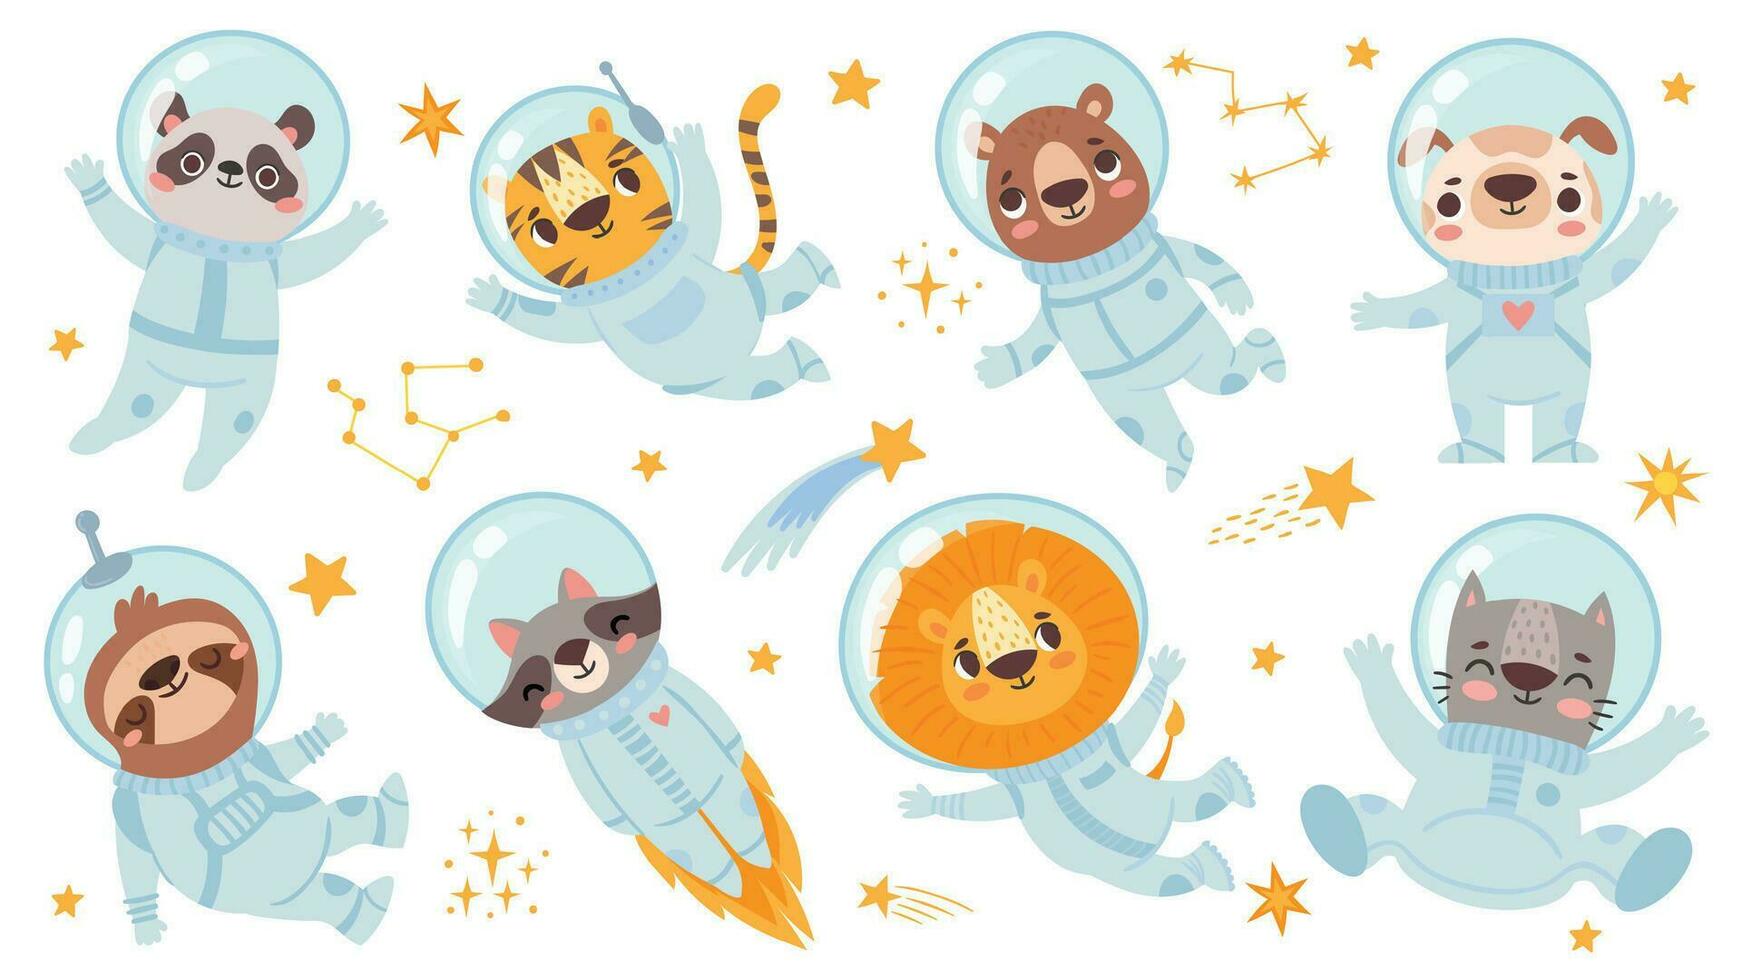 djur astronauter. Plats team söt djur- i Plats kostymer, starry universum med kosmonauter för barns skriva ut flygblad vektor tecken uppsättning